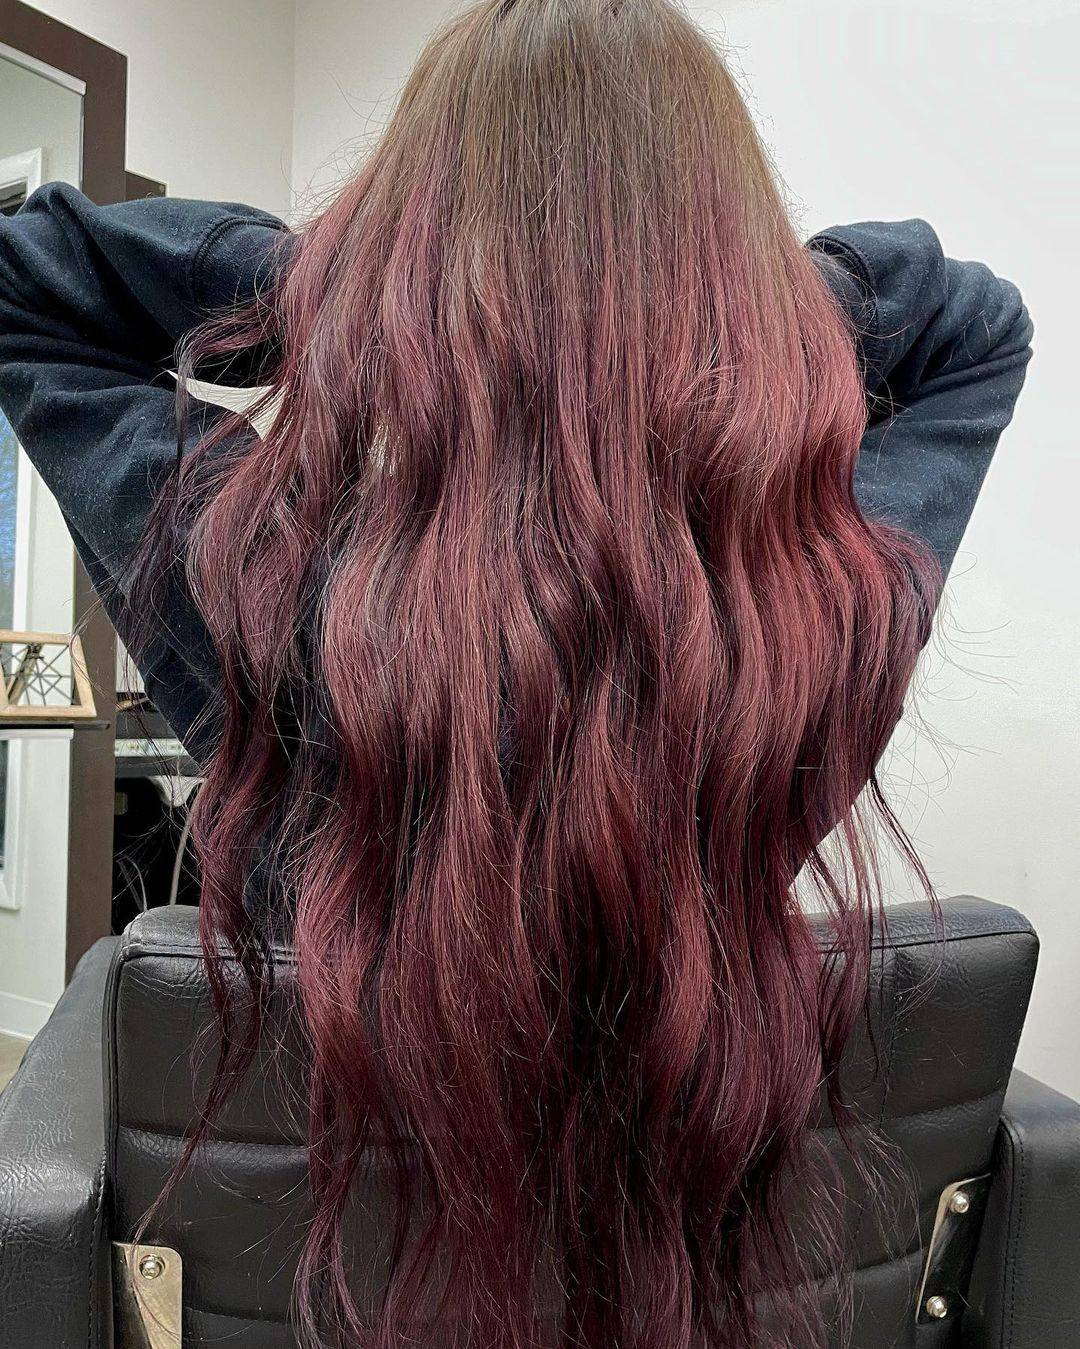 Burgundy hair color 271 burgundy hair color | burgundy hair color for women | burgundy hair color highlights Burgundy Hair Color